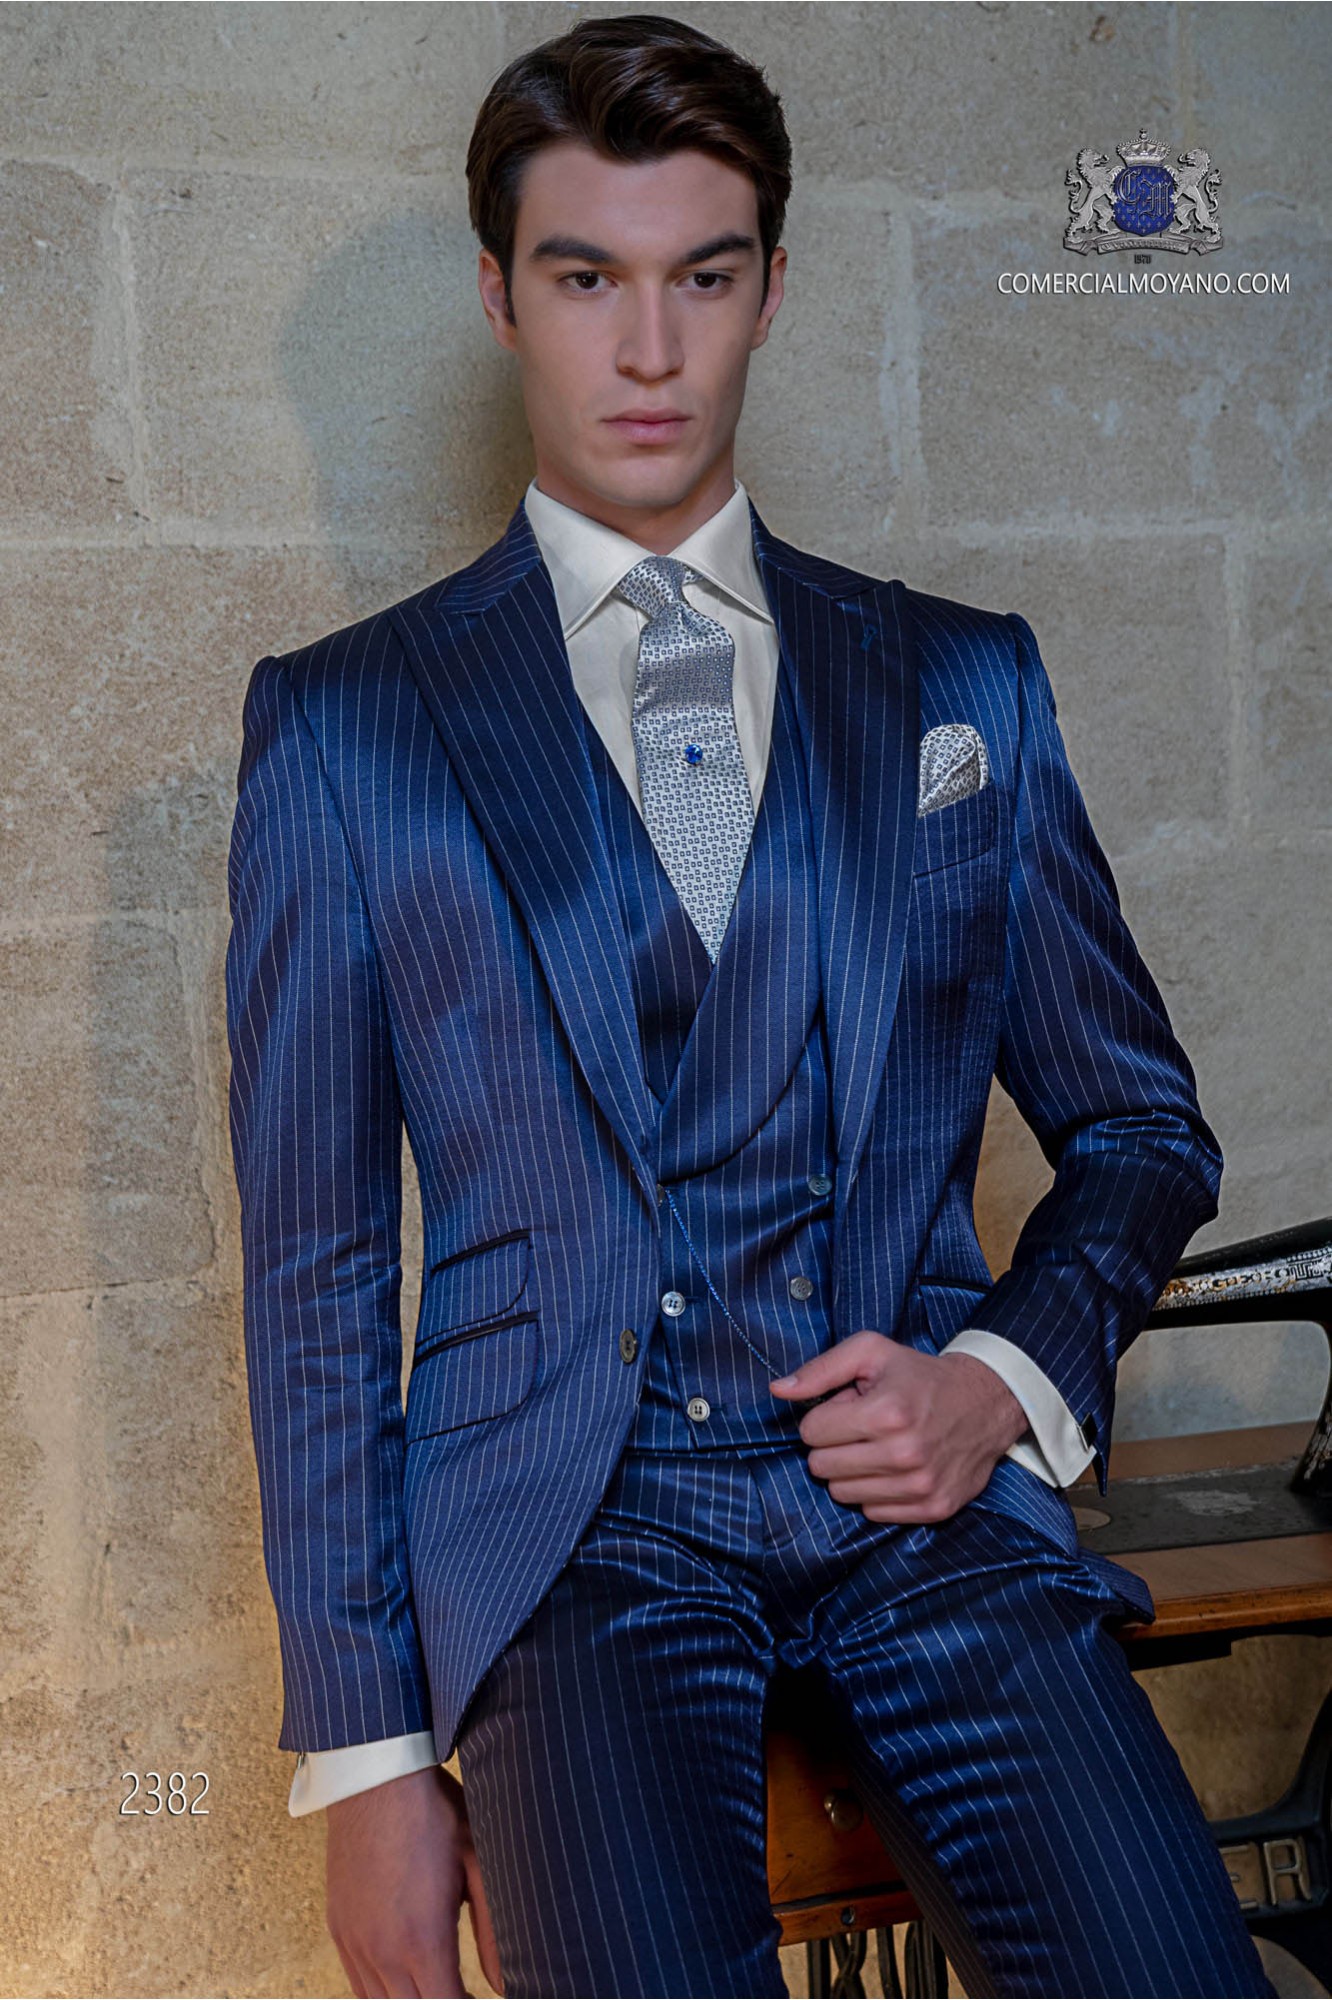 Traje diplomático azul royal modelo: 2382 Mario Moyano colección Gentleman